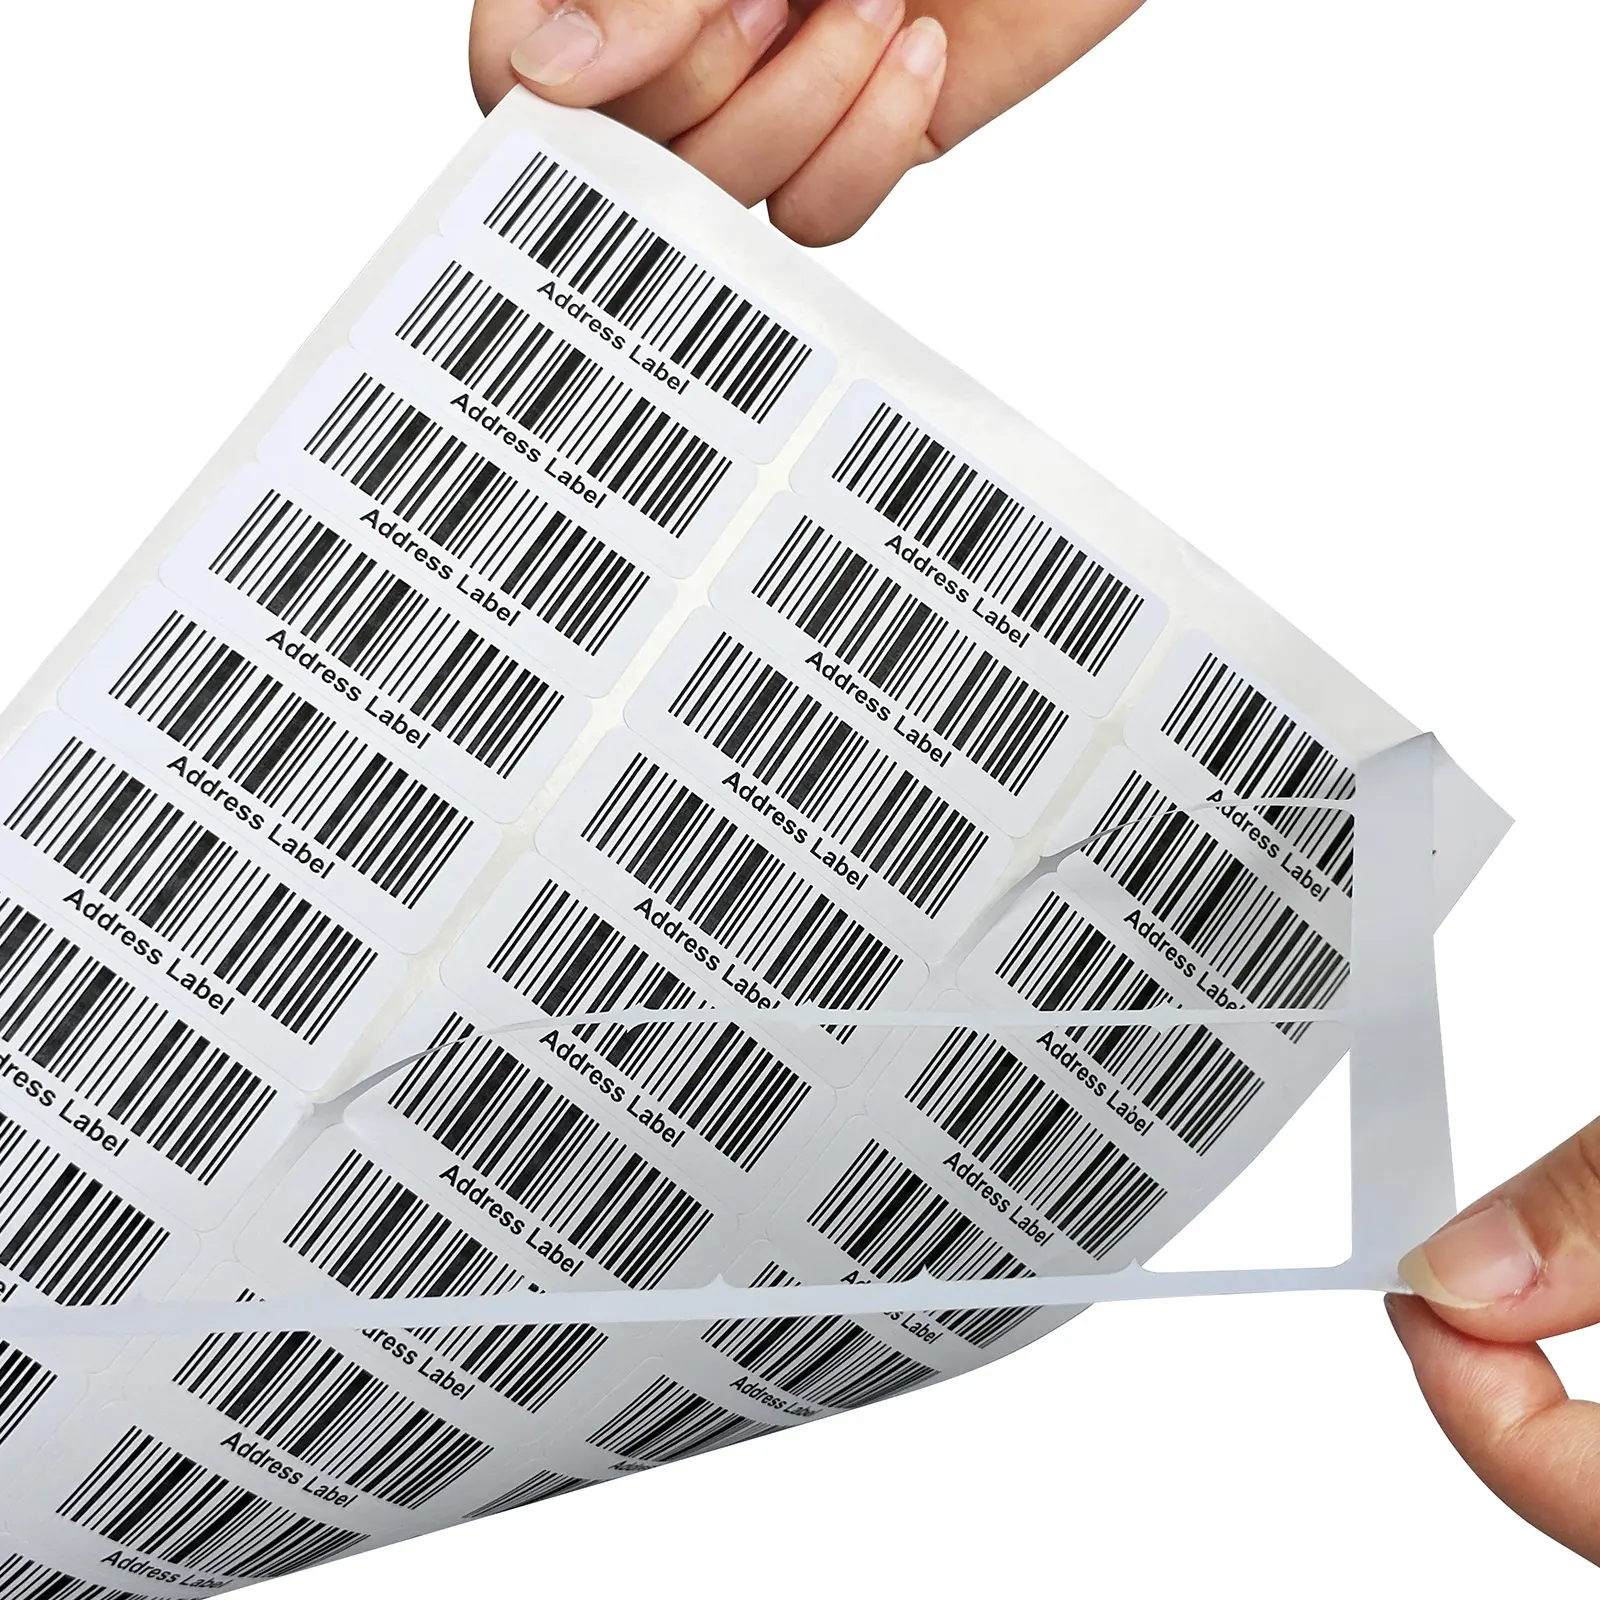 По Заводской Цене A4 листовые клейкие адресные этикетки с 30 штрих-кодами для лазерных и струйных принтеров